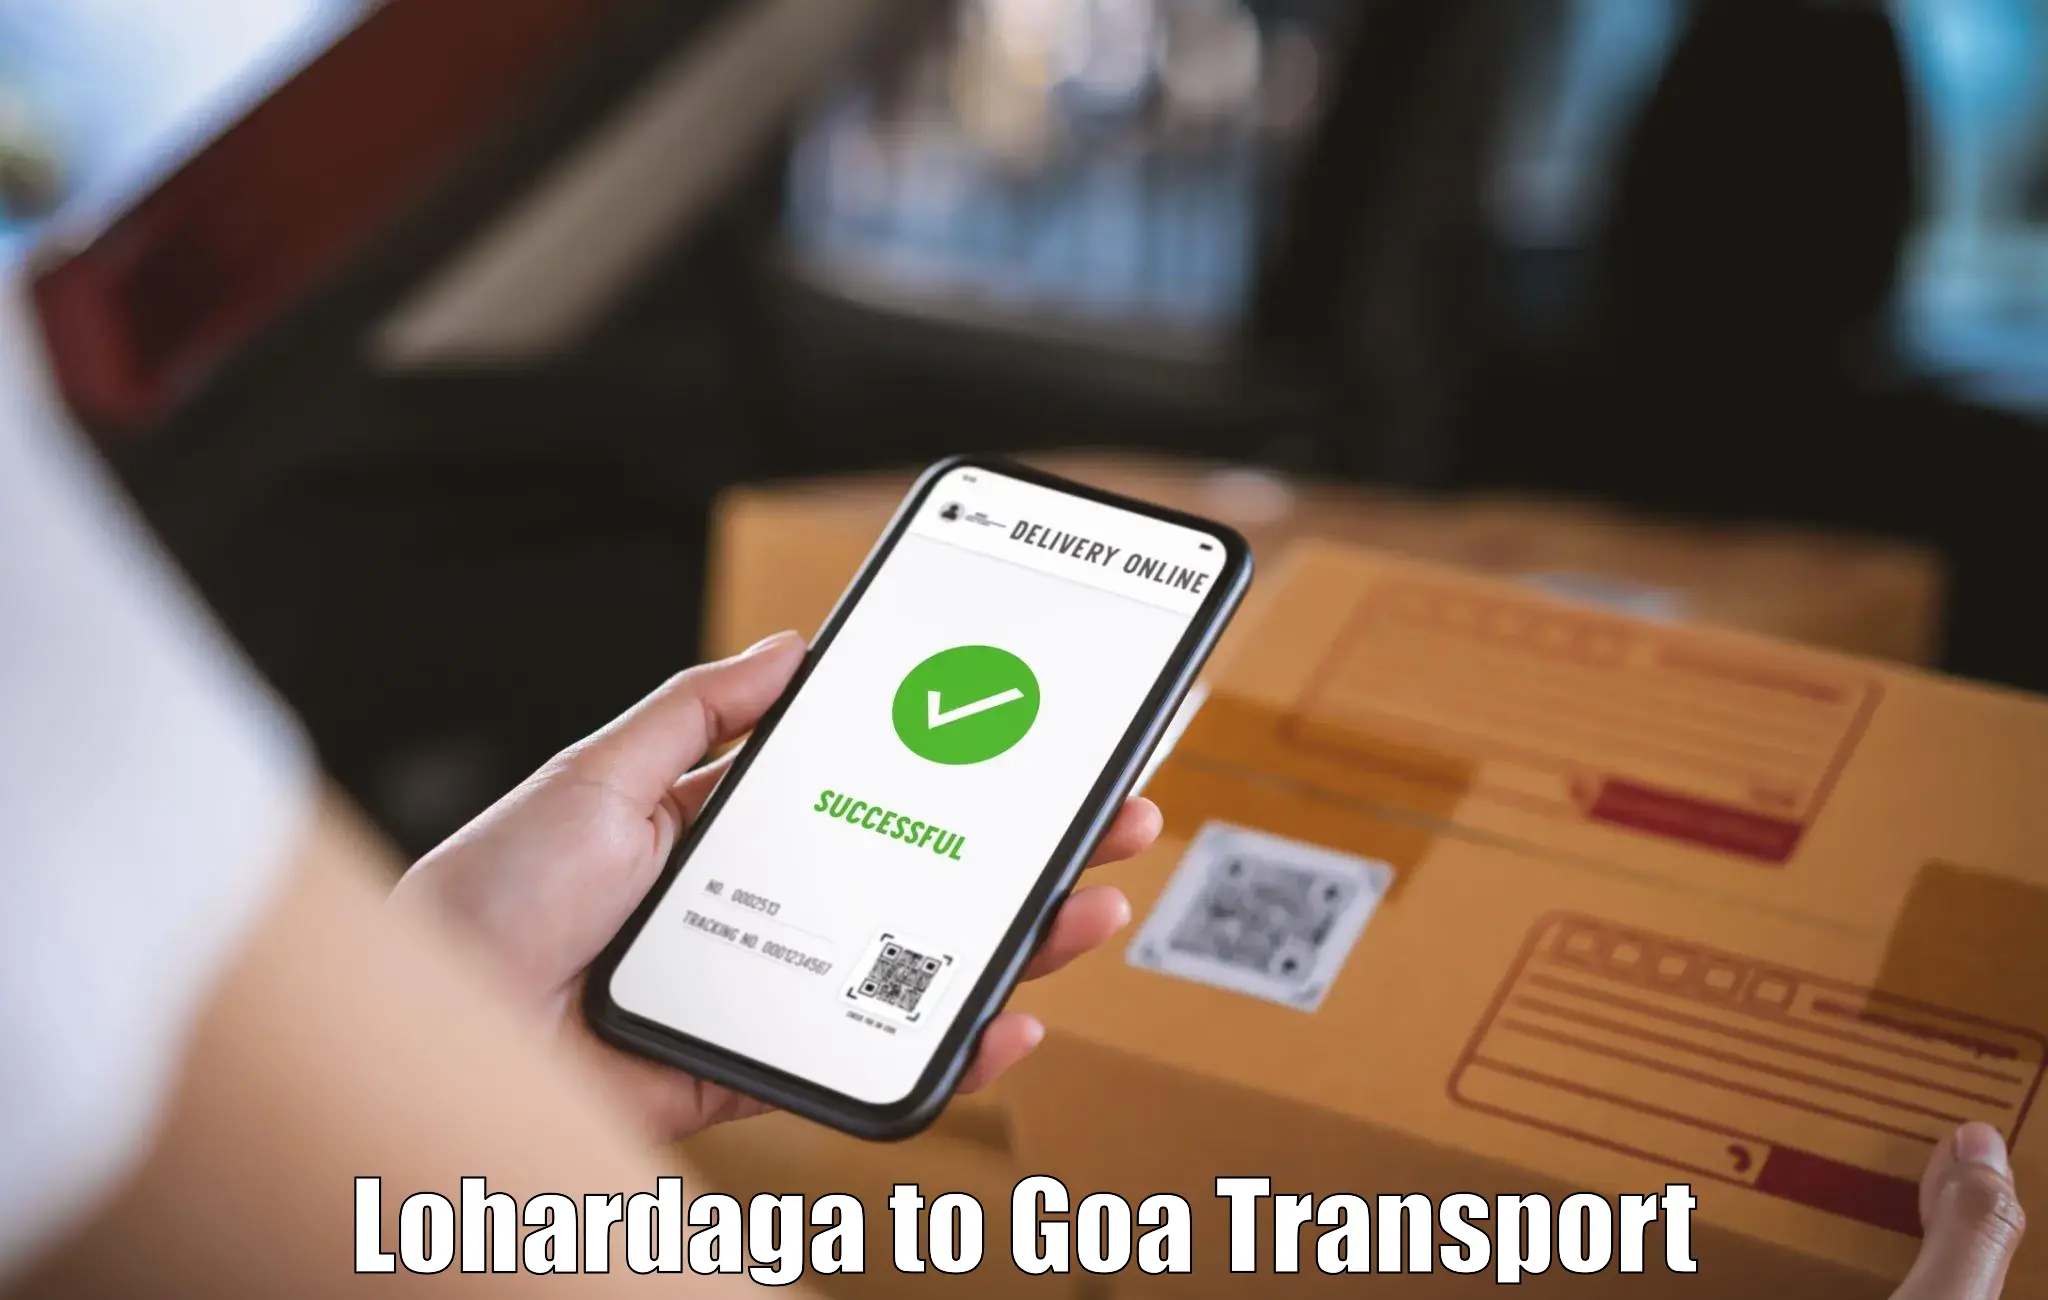 Two wheeler transport services Lohardaga to Goa